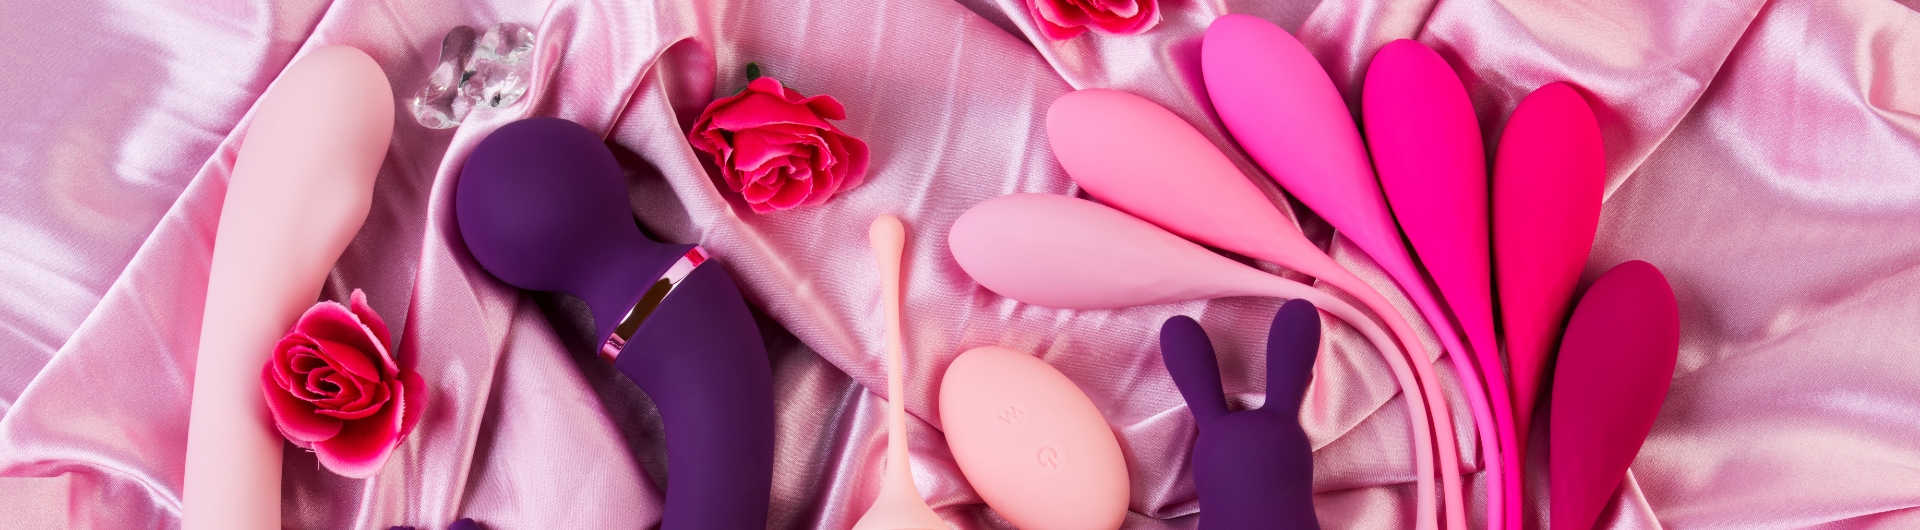 Benutztes Sexspielzeug online bestellen | Smell me Onlineshop